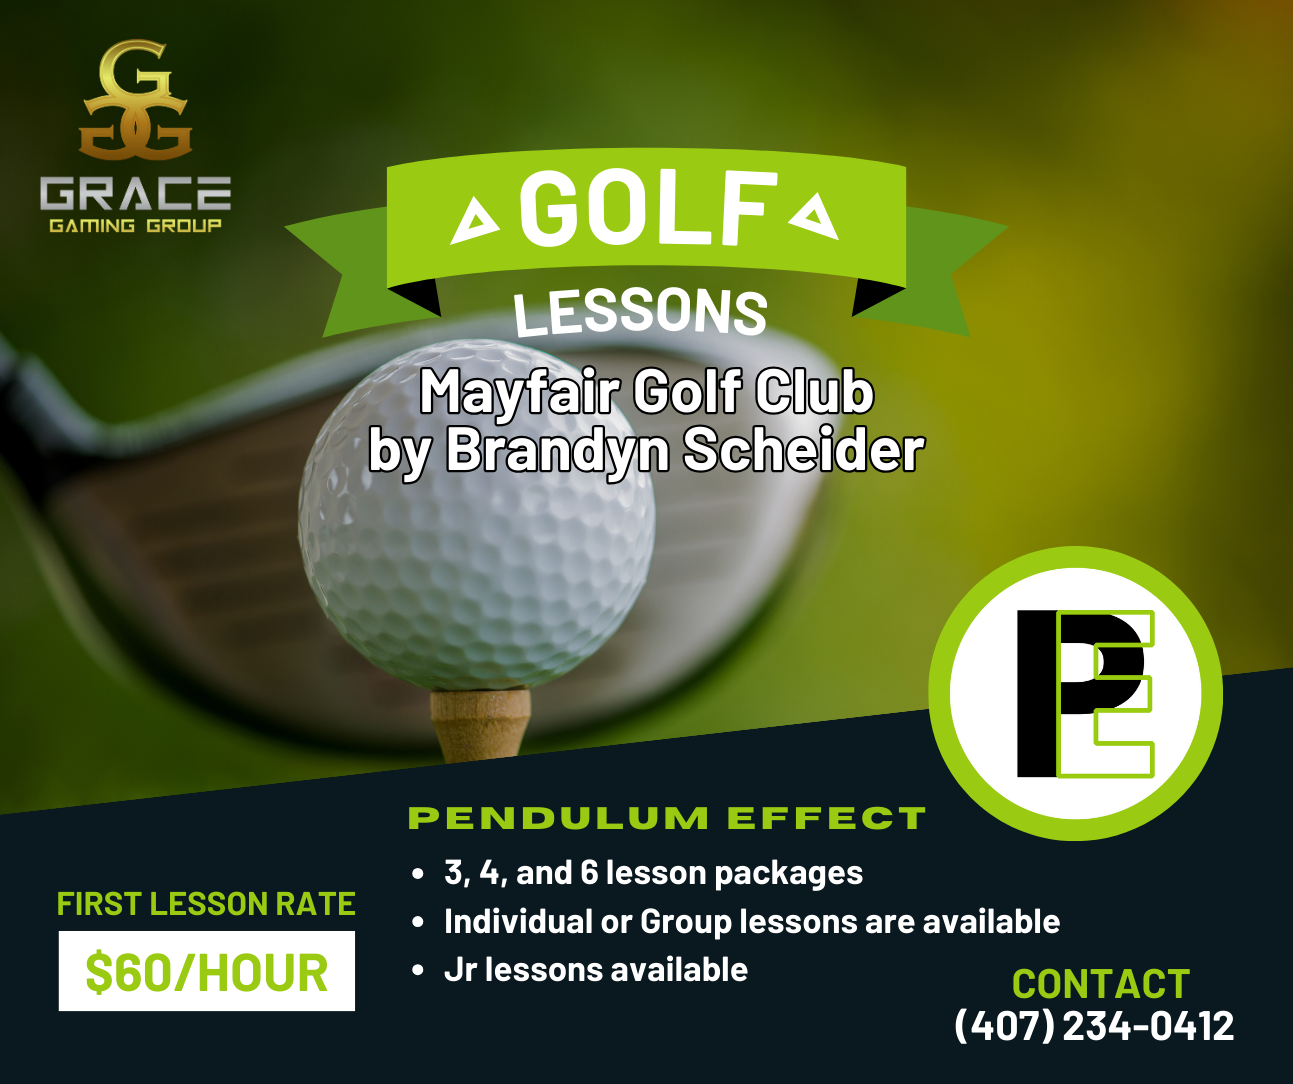 A golf lessons ad for mayfair golf club by brandyn scheider